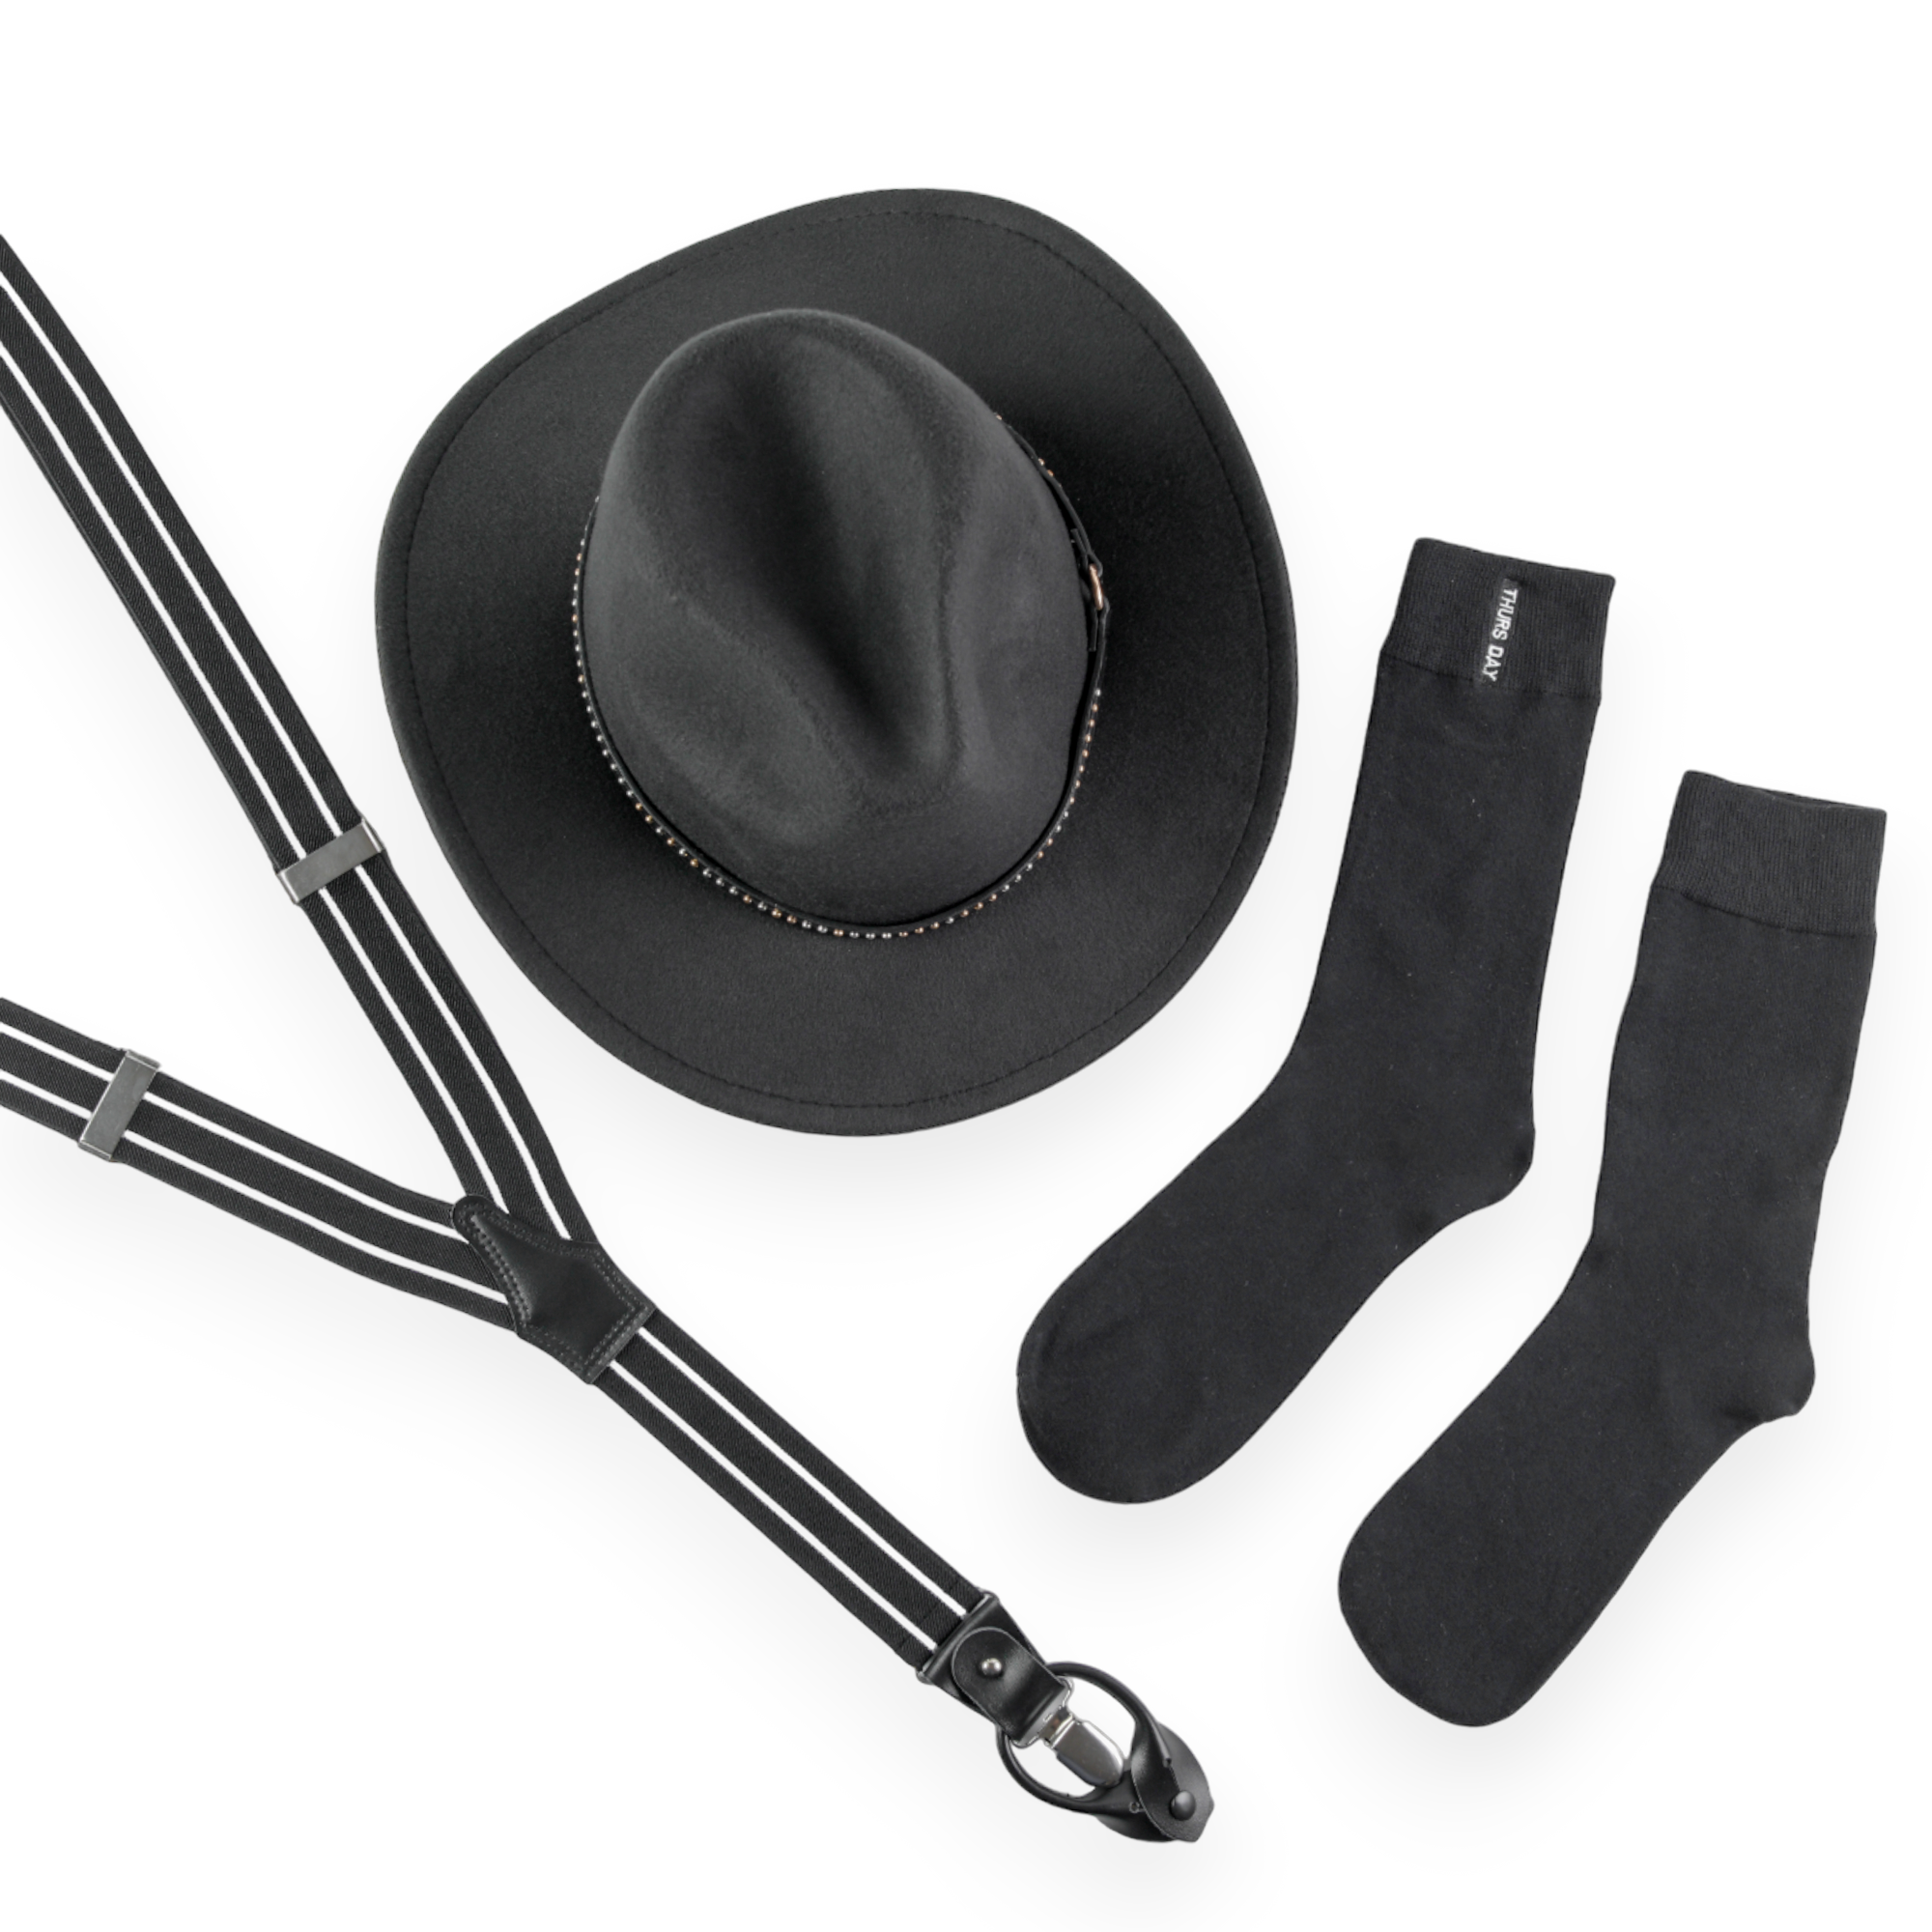 Chokore Special 3-in-1 Gift Set (Hat, Suspenders, & Socks)